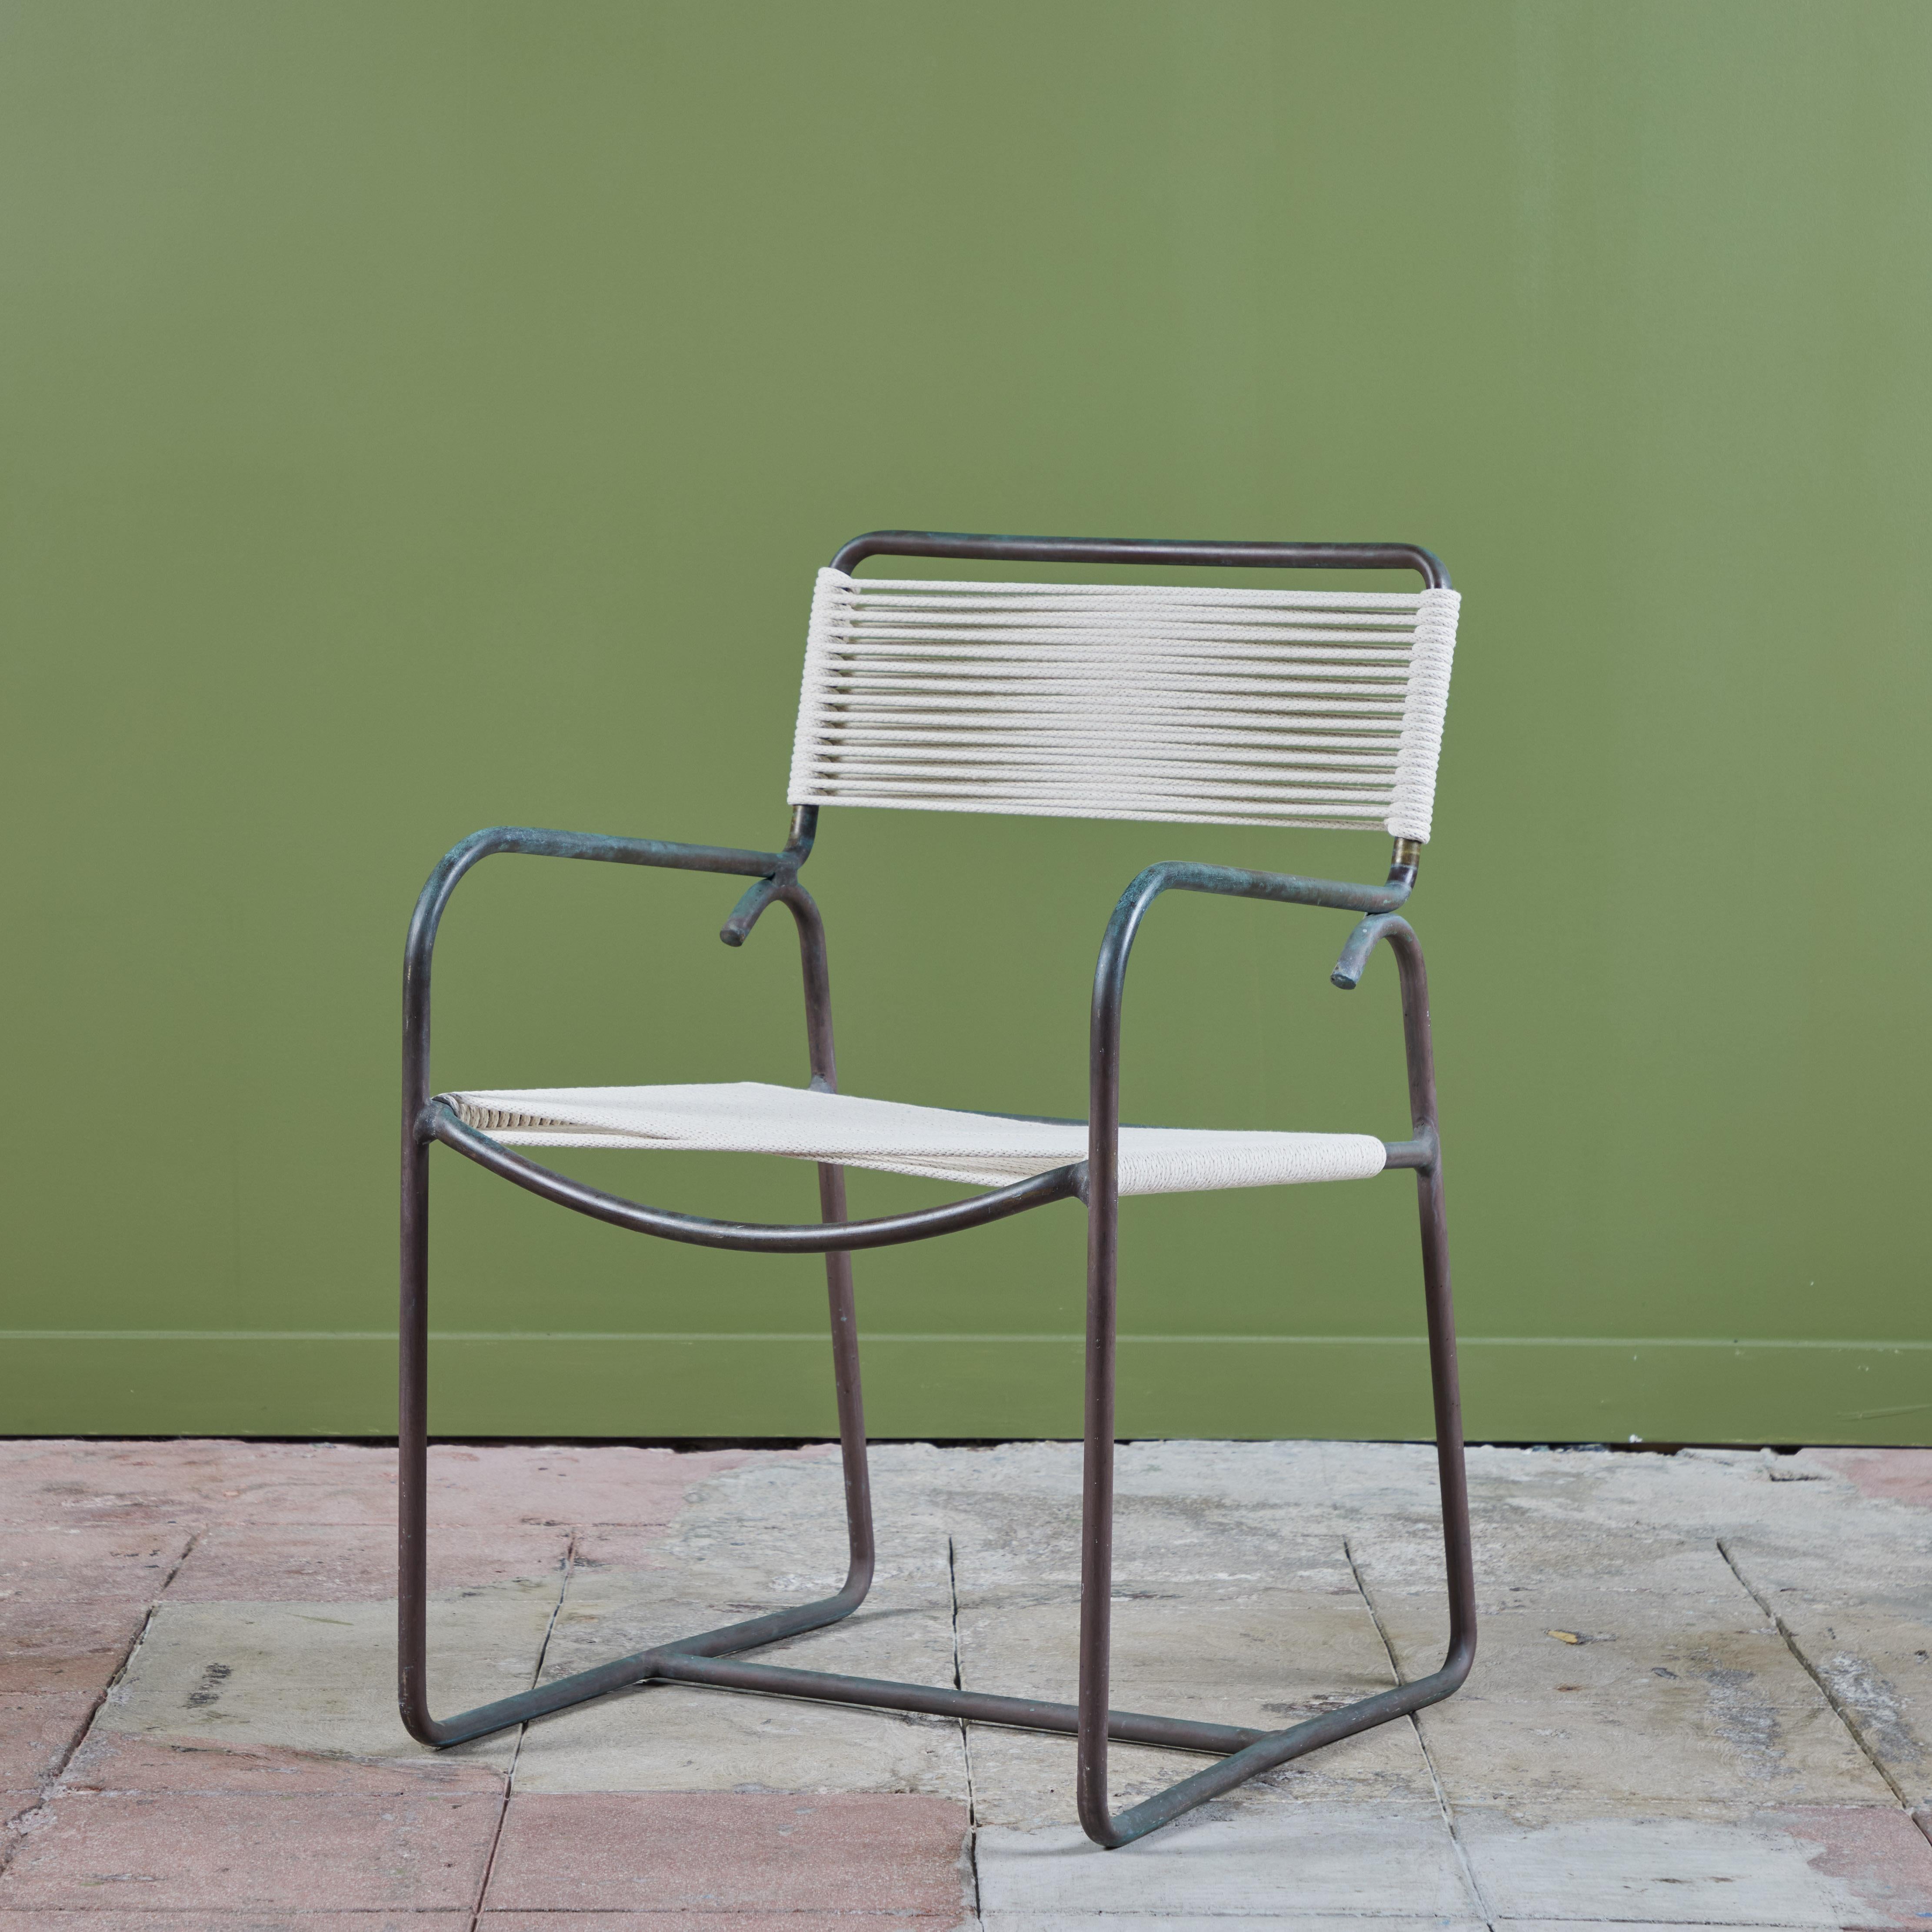 Ein Terrassensessel Modell C1700A aus patinierter Bronze, entworfen von Walter Lamb und hergestellt von Brown Jordan. Der Stuhl hat einen Rohrrahmen, der von einer gebogenen Bronzekufe und einer Armlehne auf jeder Seite getragen wird. Die Sitzfläche